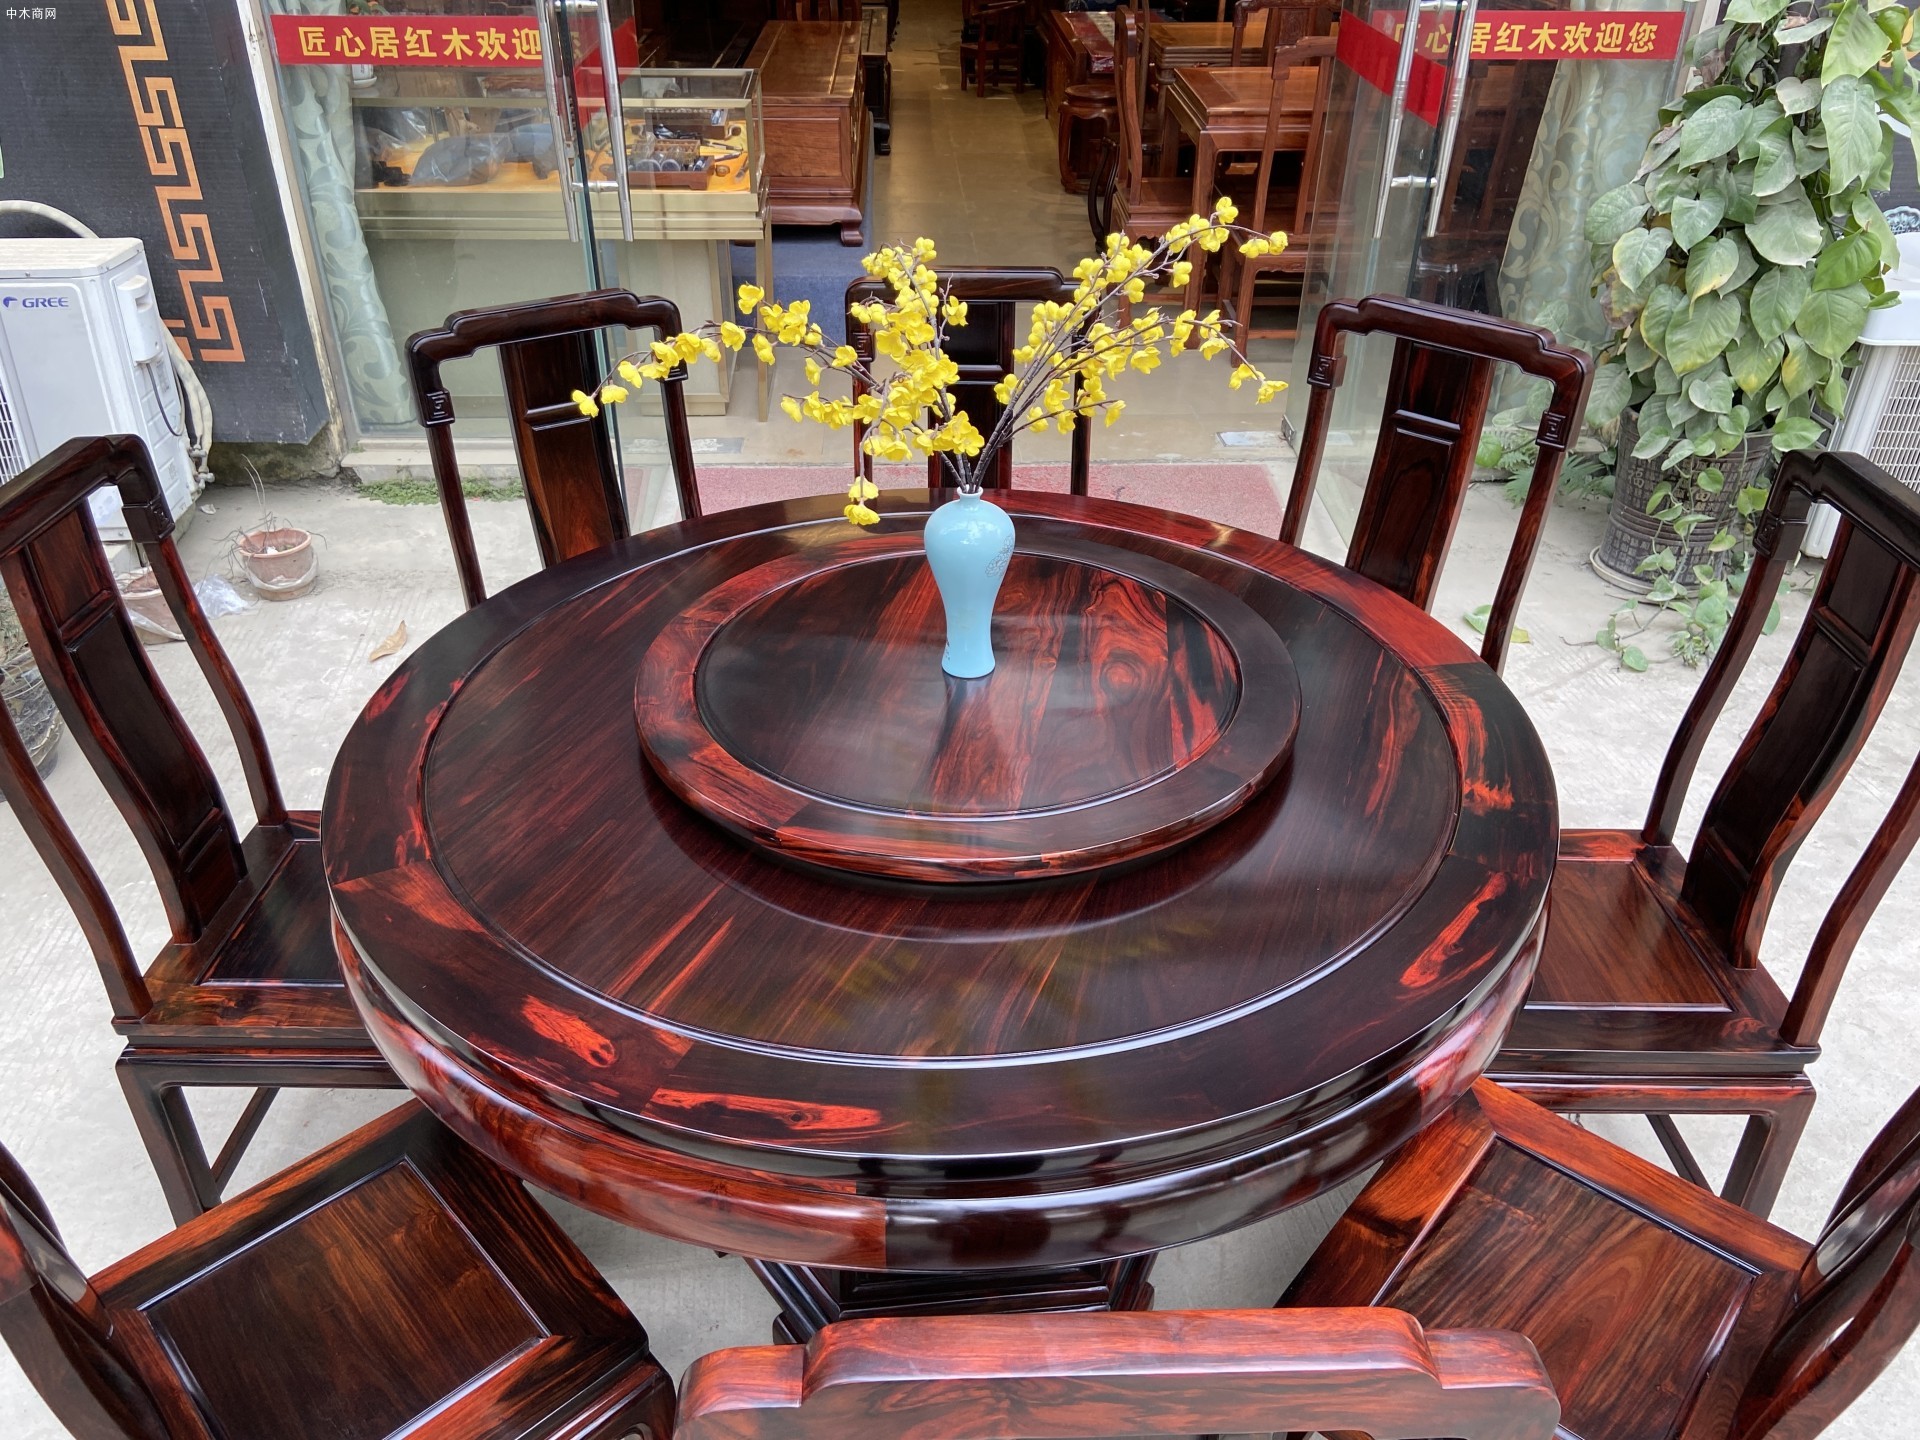 老挝大红酸枝国色天香圆桌寓意阖家团圆,让家更温馨品牌